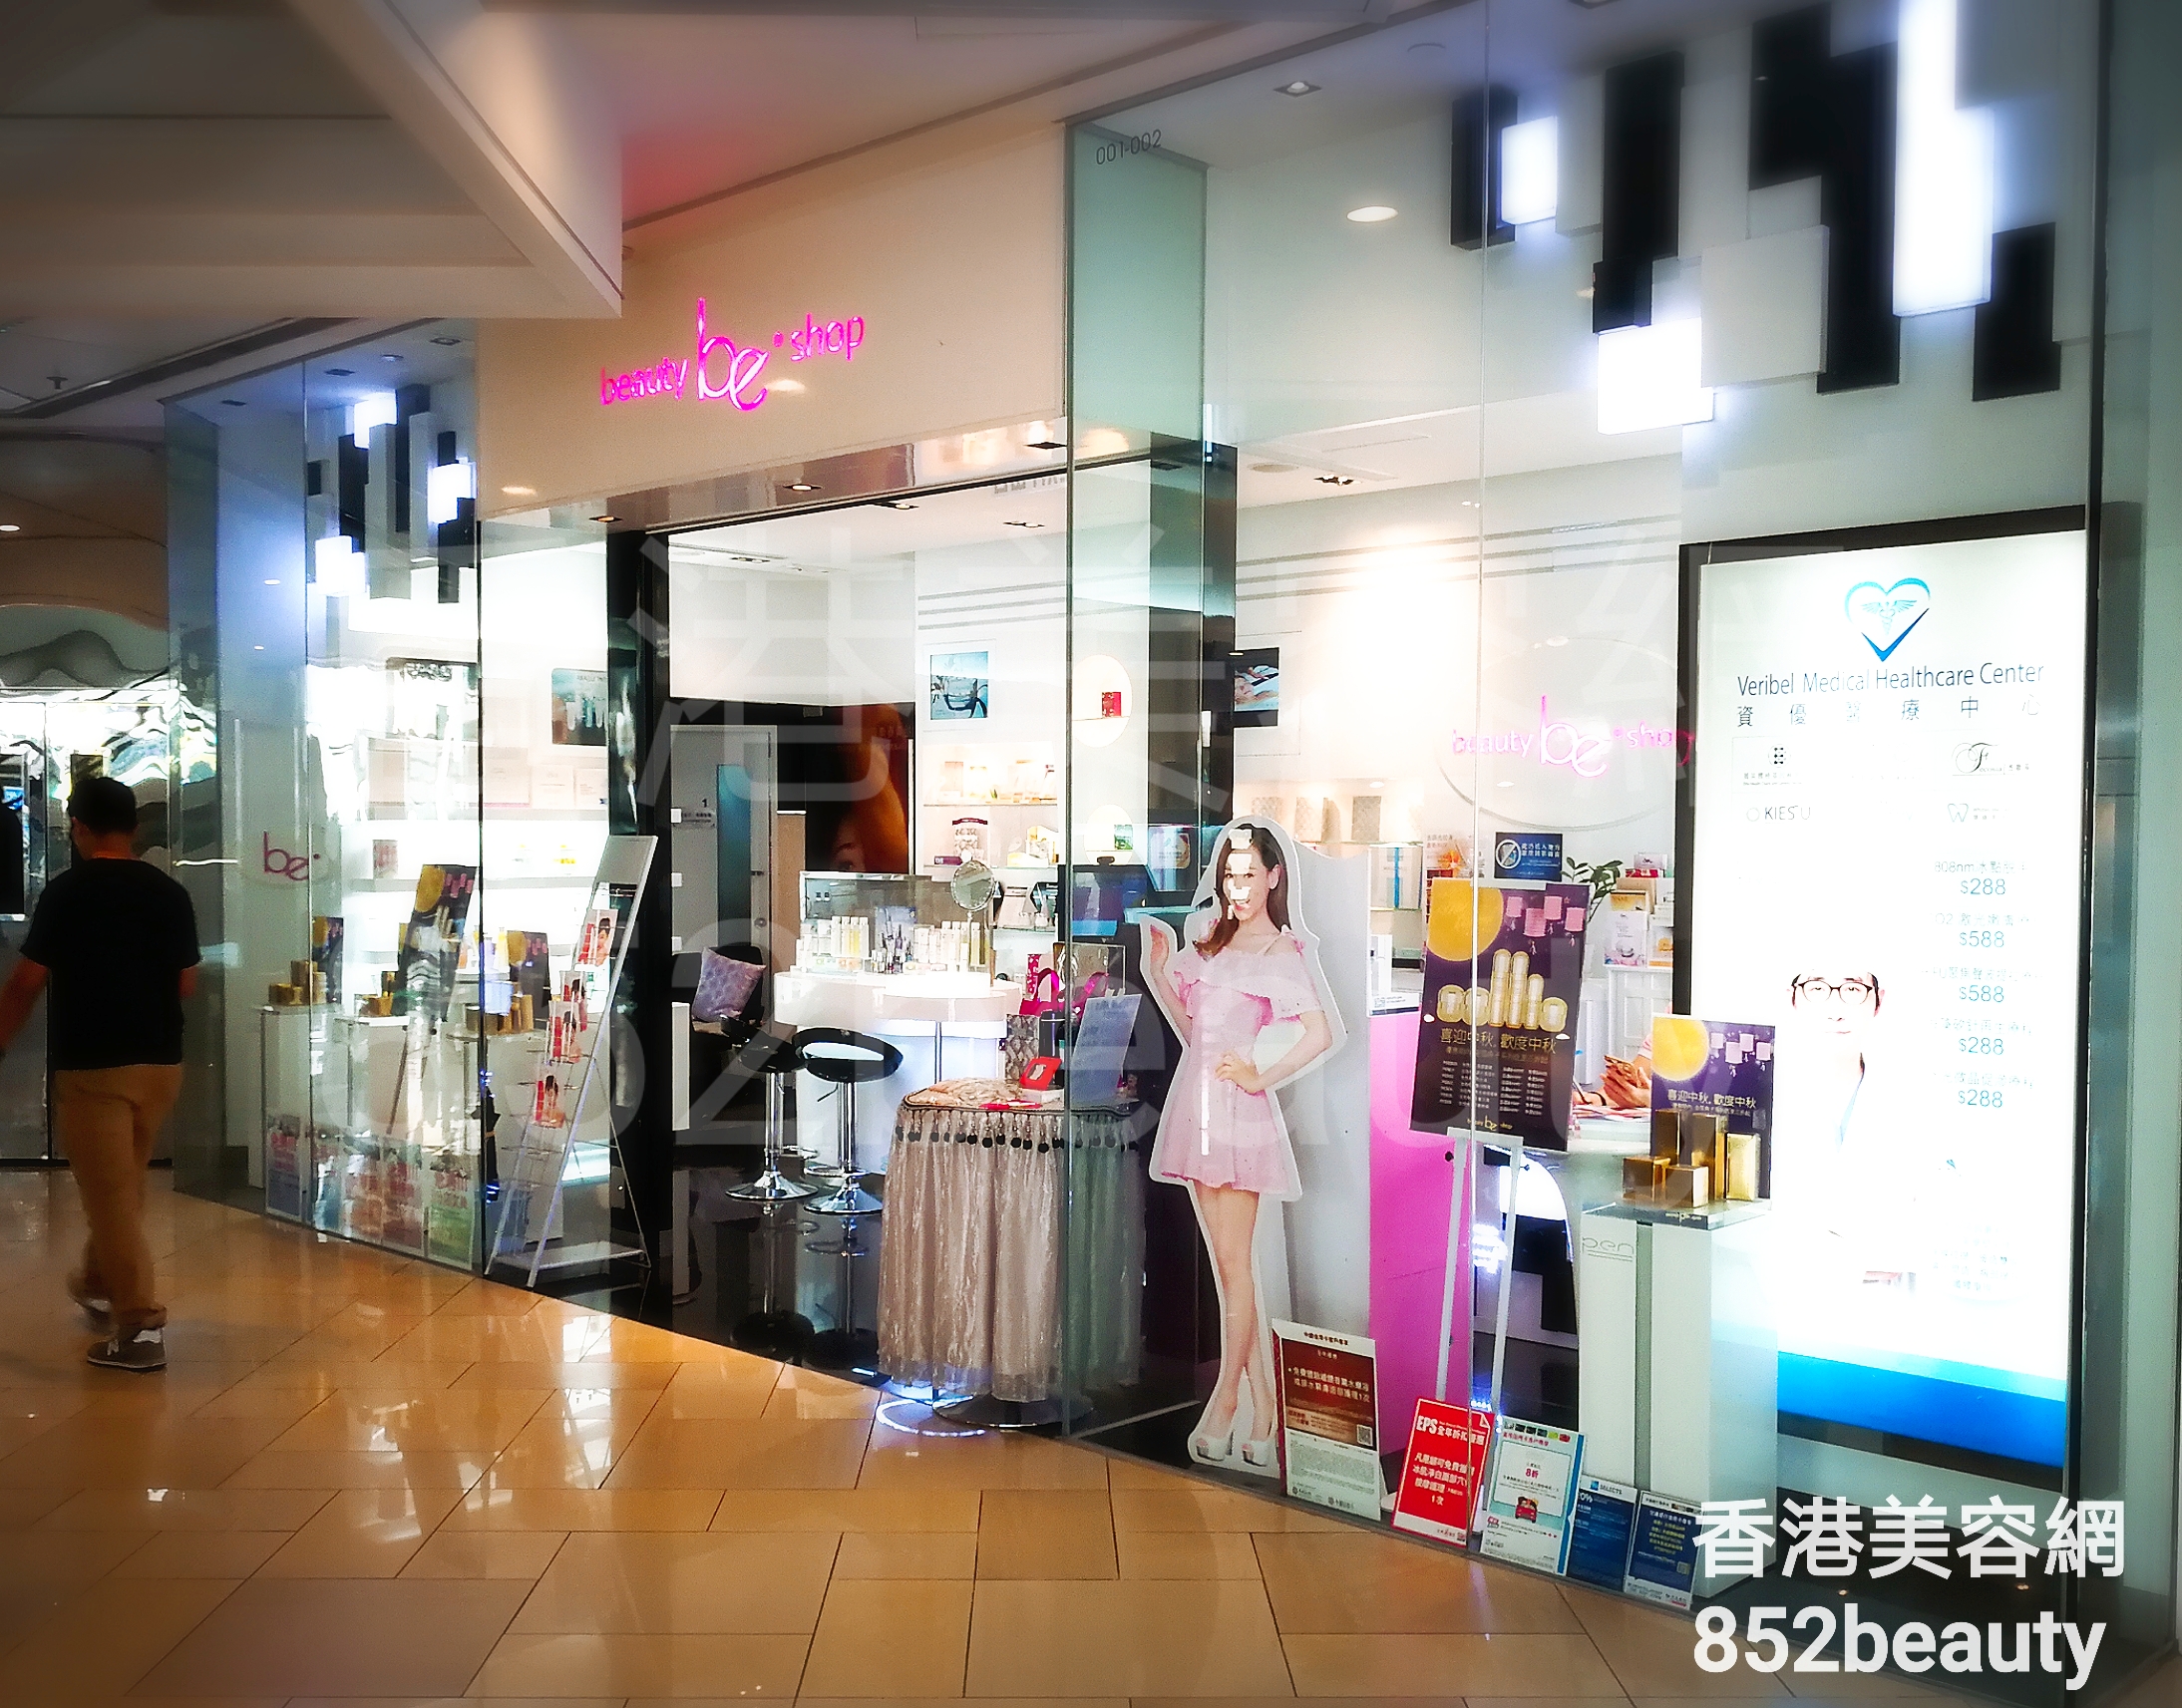 美甲: be beauty shop (港運城)